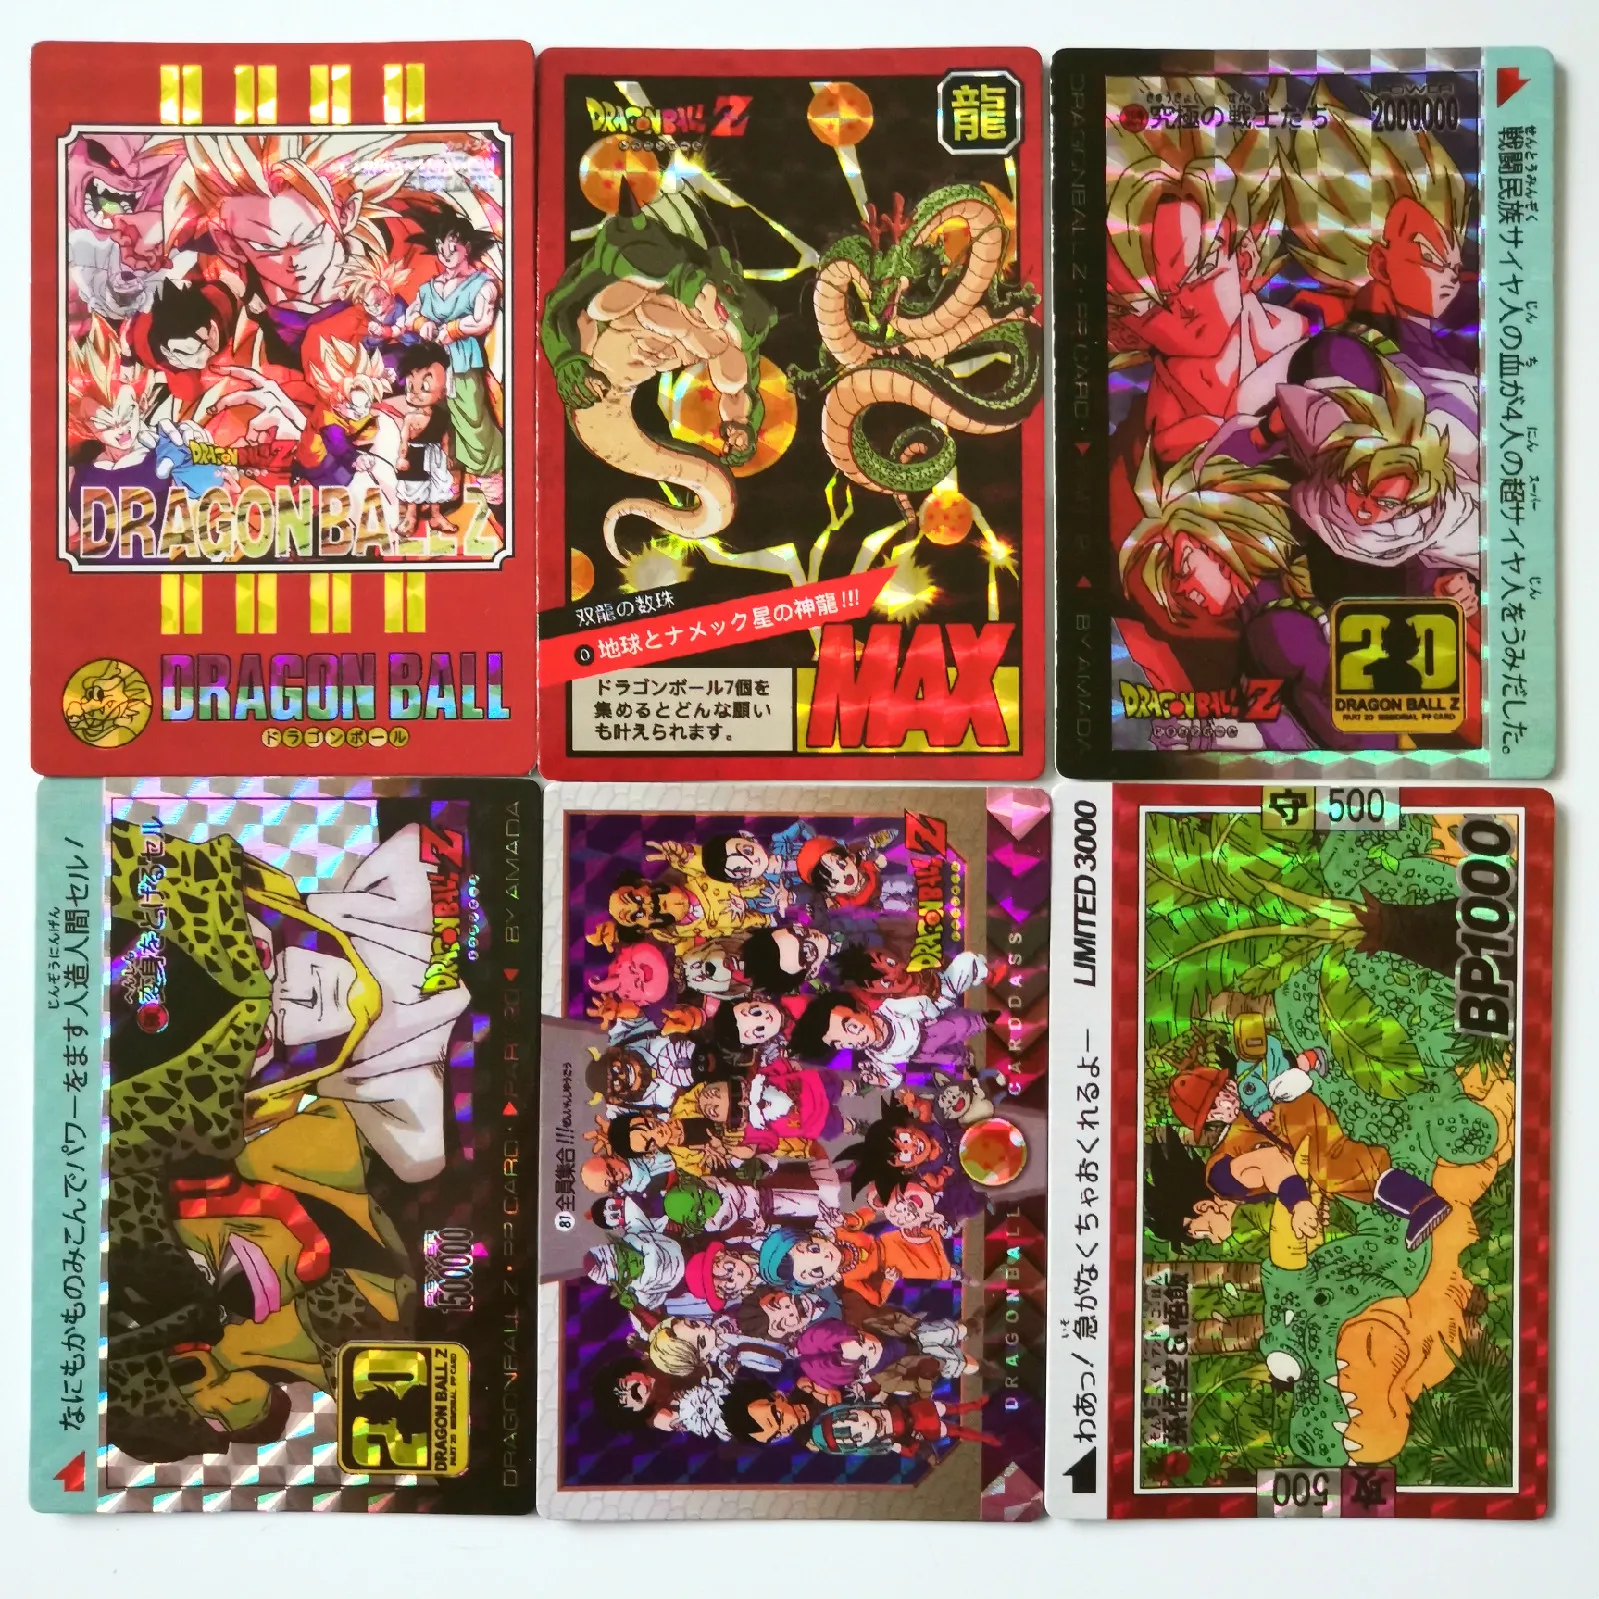 6 шт./компл. супер Dragon Ball-Z Fighting Heroes batch Card Ultra Instinct Goku Vegeta игровая коллекция карт